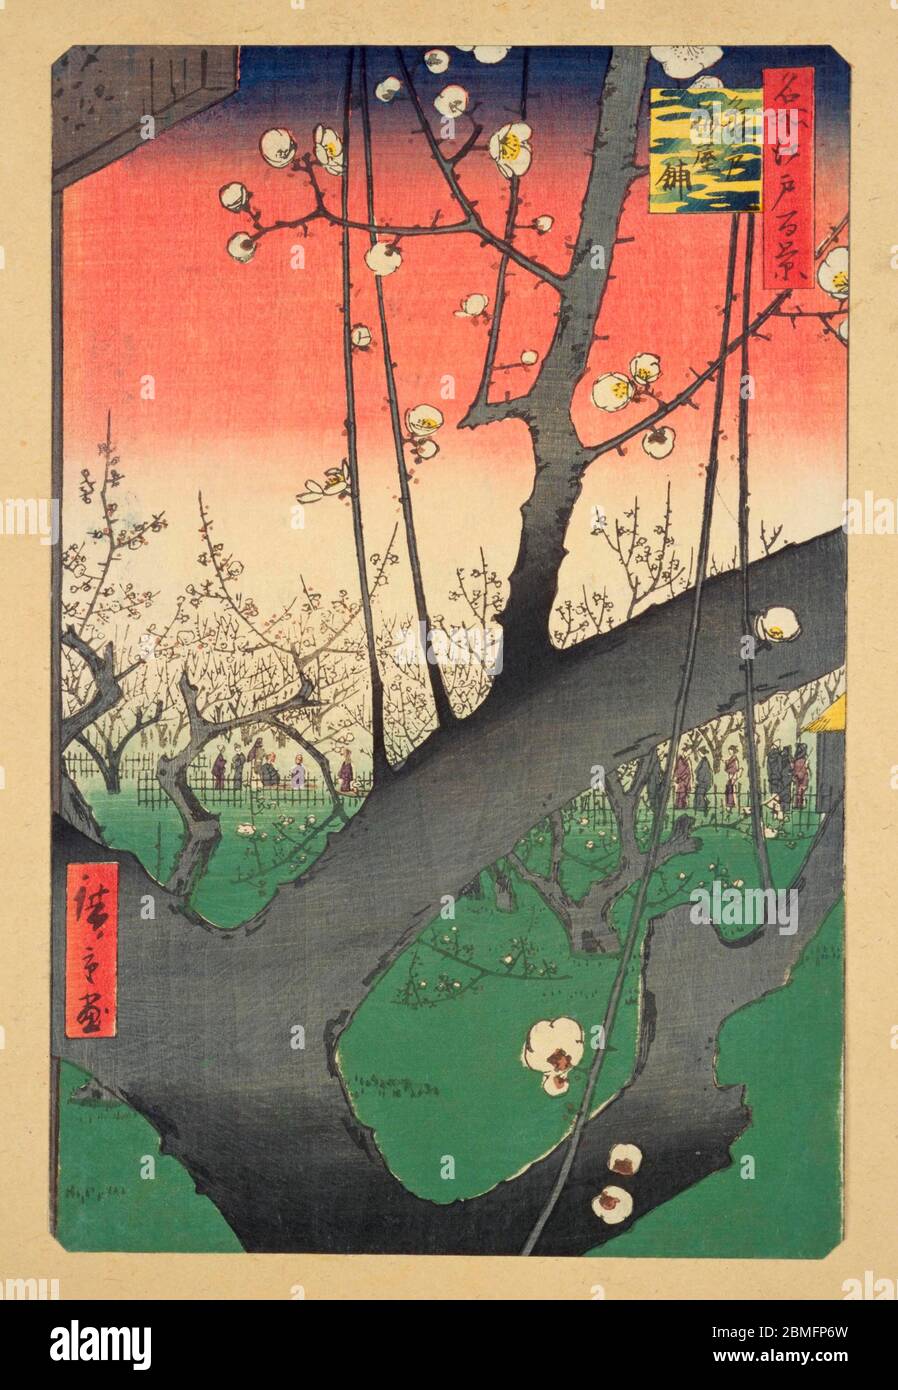 [ 1850 Giappone - Plum Blossom giapponese ] - Plum Blossom a Umeyashiki, un giardino di prugne sulle rive del fiume Sumidagawa a Kameido, Edo (attuale Tokyo),1857 (Ansei 4). Questa è una delle stampe Hiroshige che il pittore olandese Vincent Van Gogh (1853–1890) dipinse copie di per studiare gli elementi che ammirava nelle stampe di legno giapponesi. Questa stampa in blocco di legno è l'immagine 30 in cento viste famose di Edo (名所江戸百景, Meisho Edo Hyakkei), una serie creata dall'artista ukiyoe Utagawa Hiroshige (歌川広重, 1797–1858). È una delle 42 scene primaverili della serie. Titolo: Parco delle prugne a Kameido (亀戸梅屋舗, Kamei Foto Stock